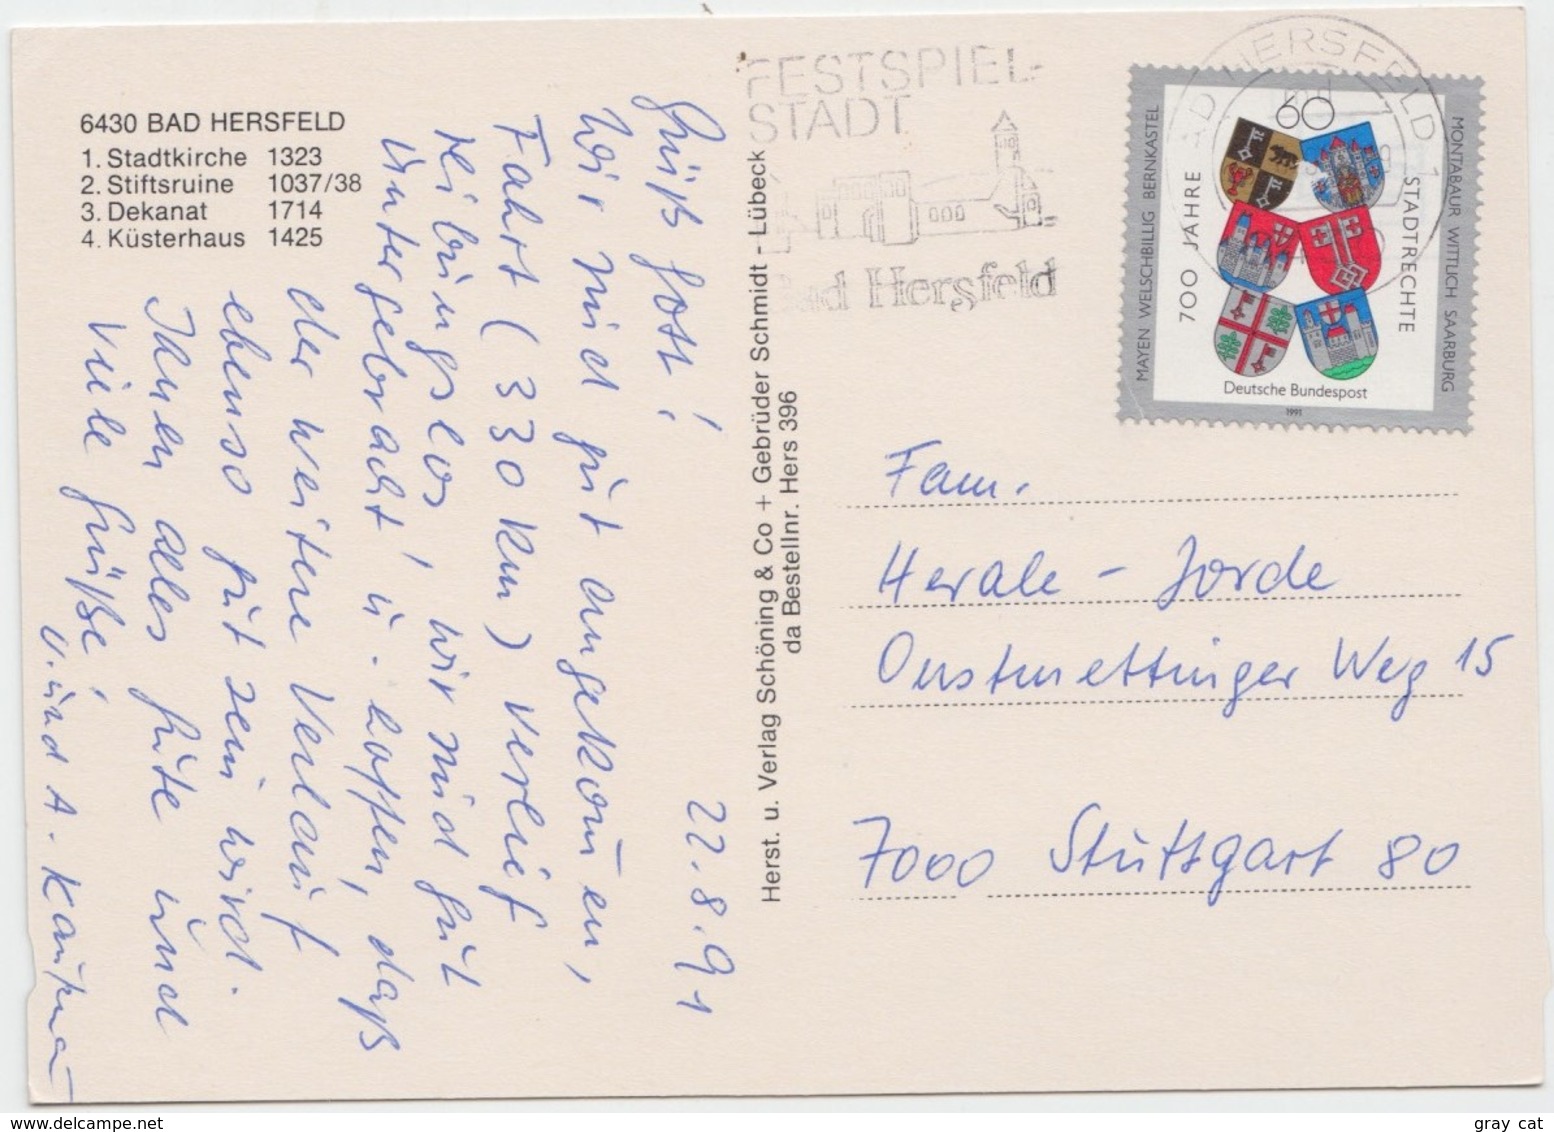 Gruss Aus Bad Hersfeld, 1991 Used Postcard [21150] - Bad Hersfeld